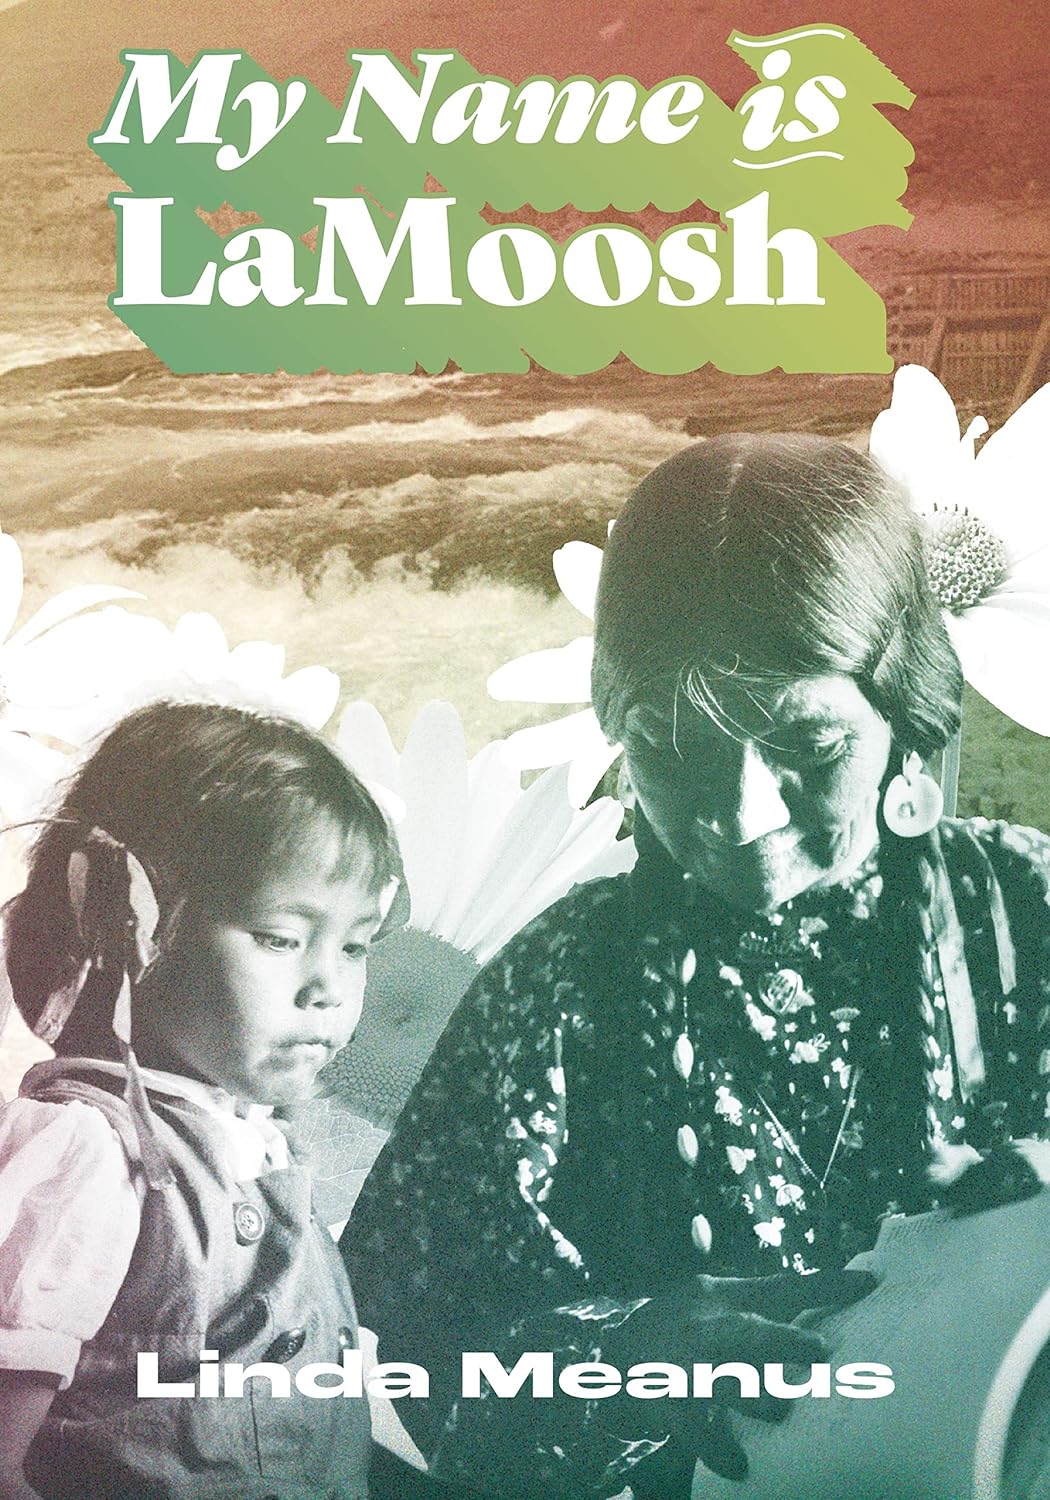 My Name is LaMoosh by Linda Meanus